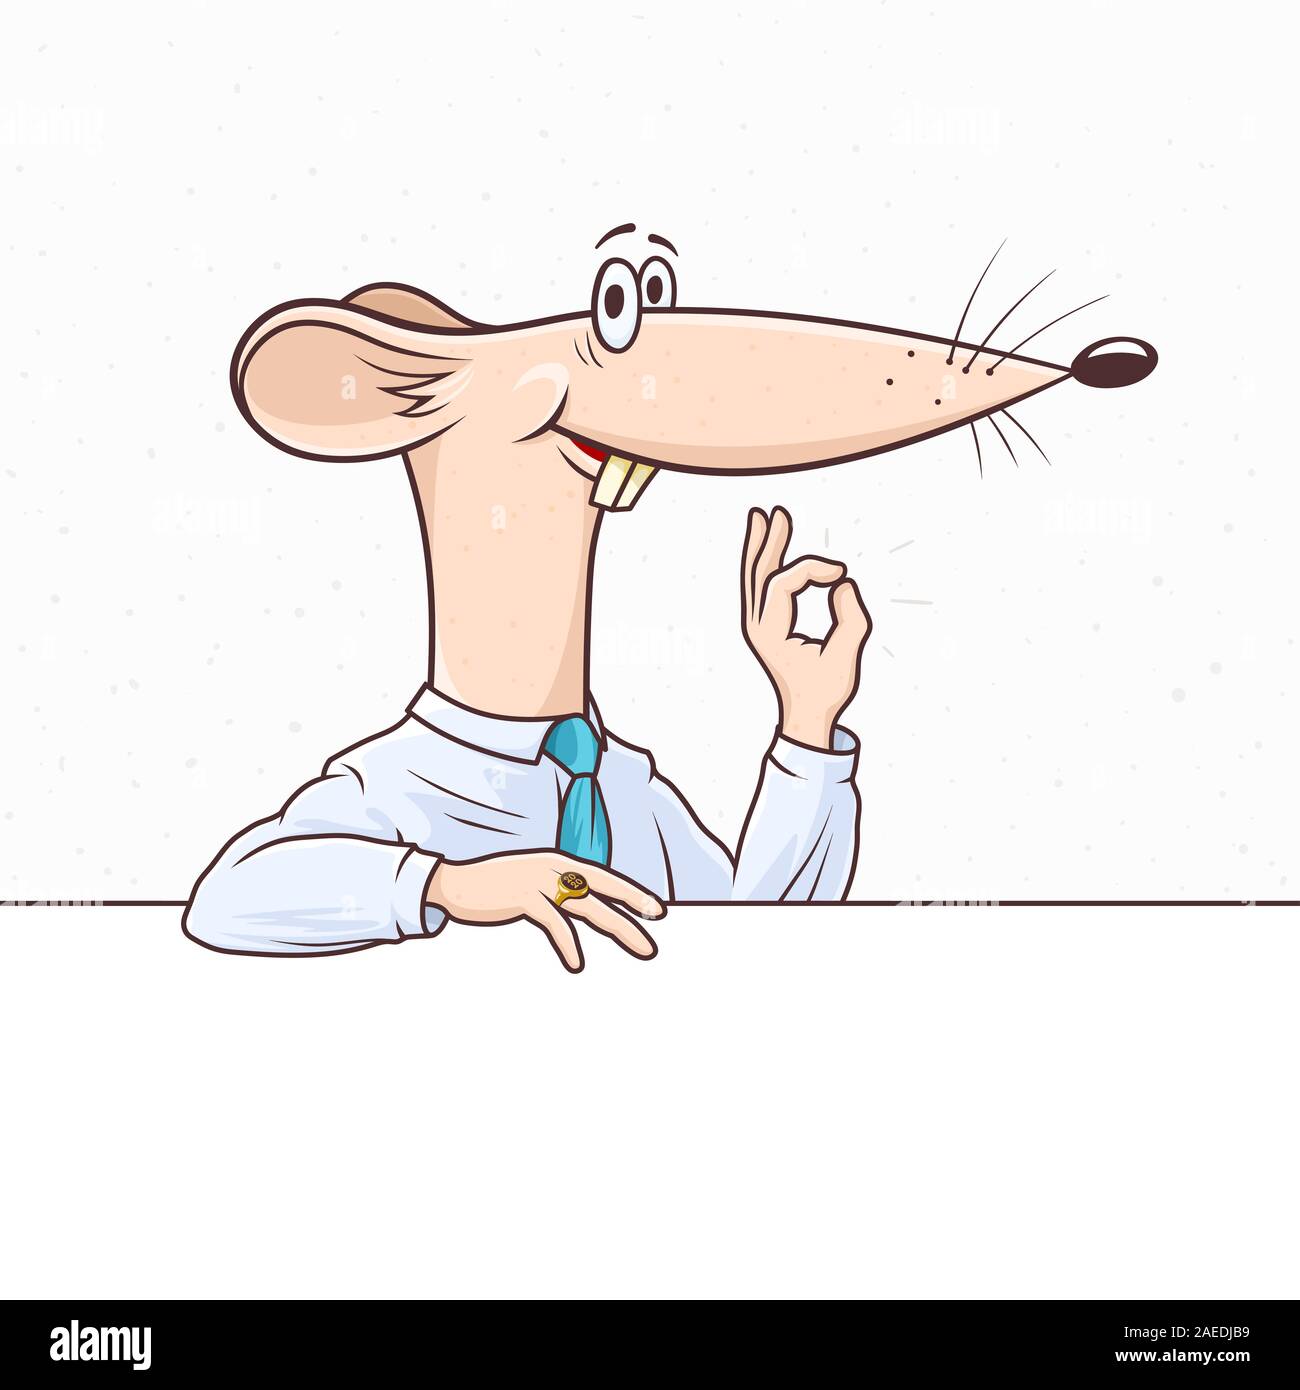 Rat de bureau comme le symbole de la nouvelle année 2020 sourit et montre un geste ok. Cartoon souris dans une entreprise chemise et cravate est adossé à la bannière. Les rasters Banque D'Images